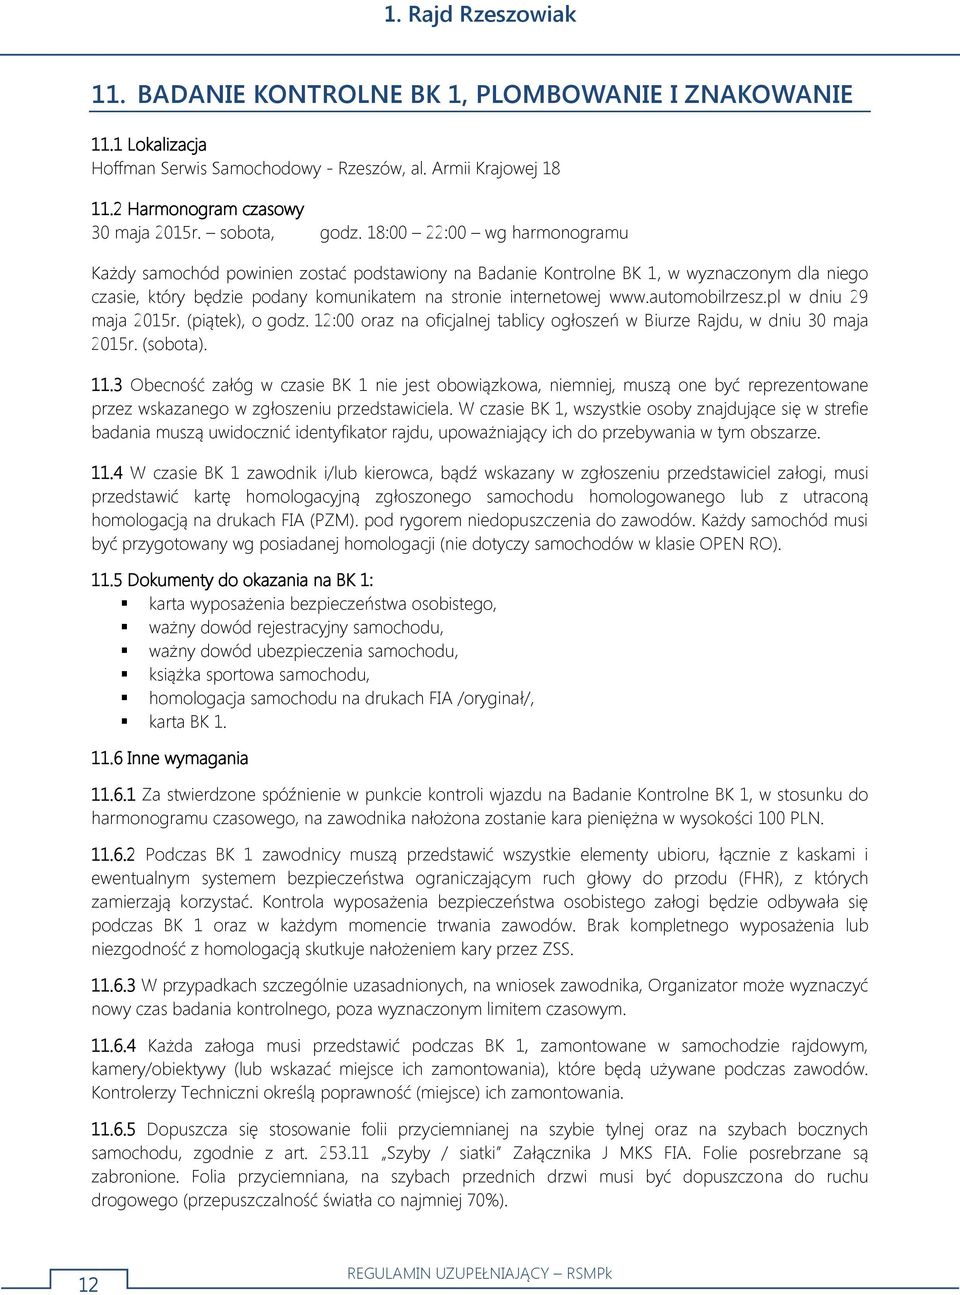 automobilrzesz.pl w dniu 29 maja 2015r. (piątek), o godz. 12:00 oraz na oficjalnej tablicy ogłoszeń w Biurze Rajdu, w dniu 30 maja 2015r. (sobota). 11.